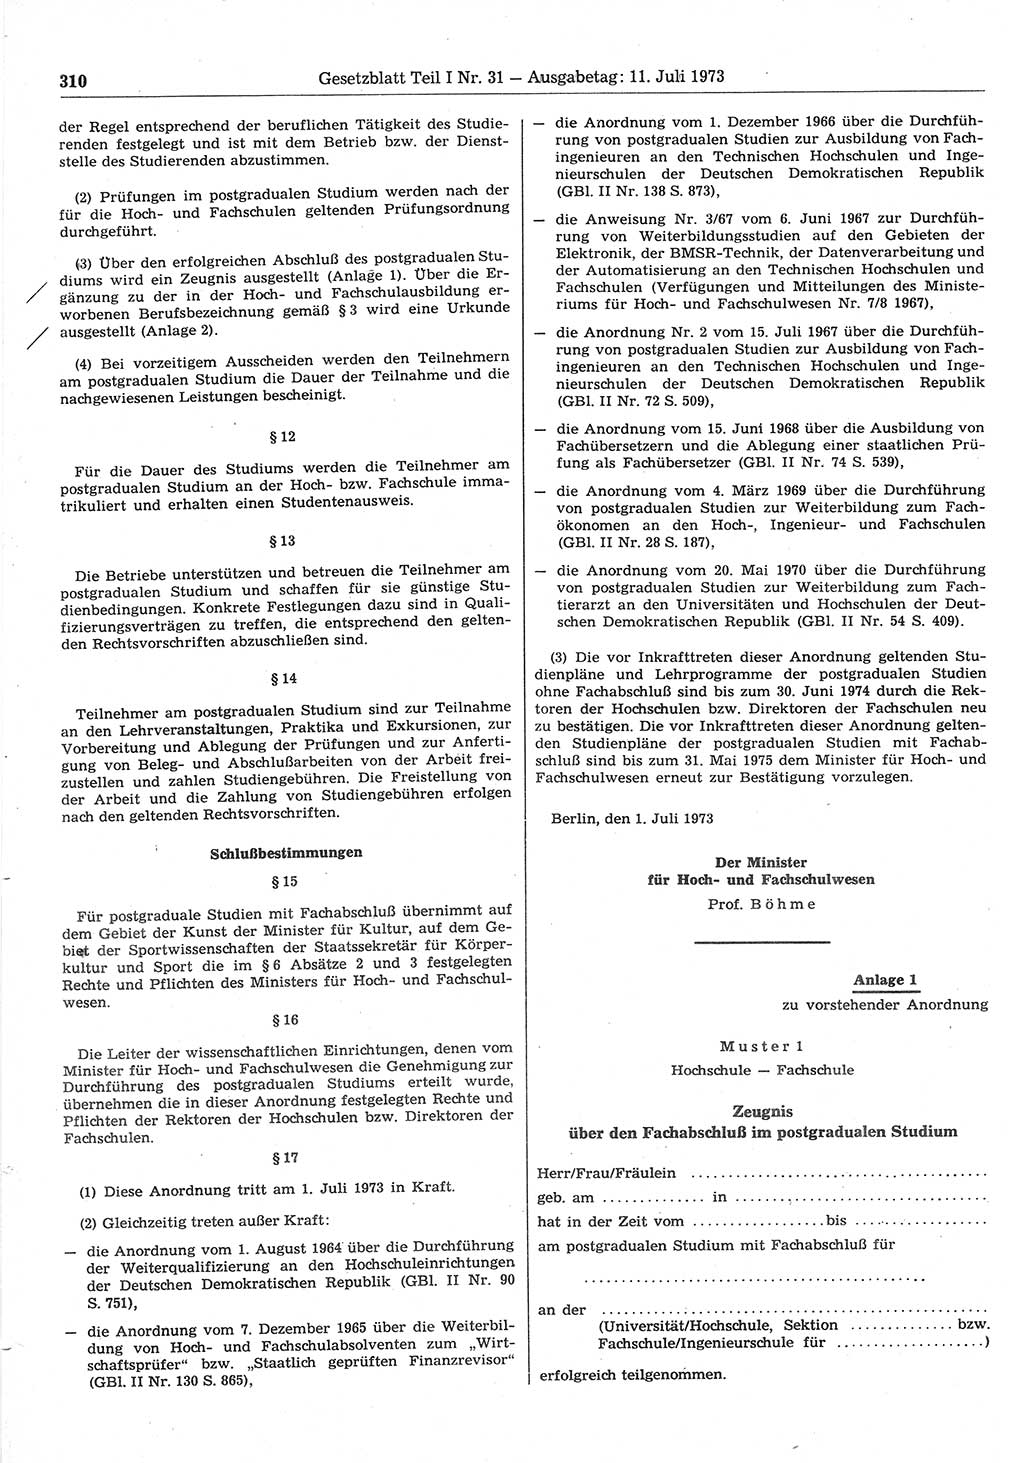 Gesetzblatt (GBl.) der Deutschen Demokratischen Republik (DDR) Teil Ⅰ 1973, Seite 310 (GBl. DDR Ⅰ 1973, S. 310)